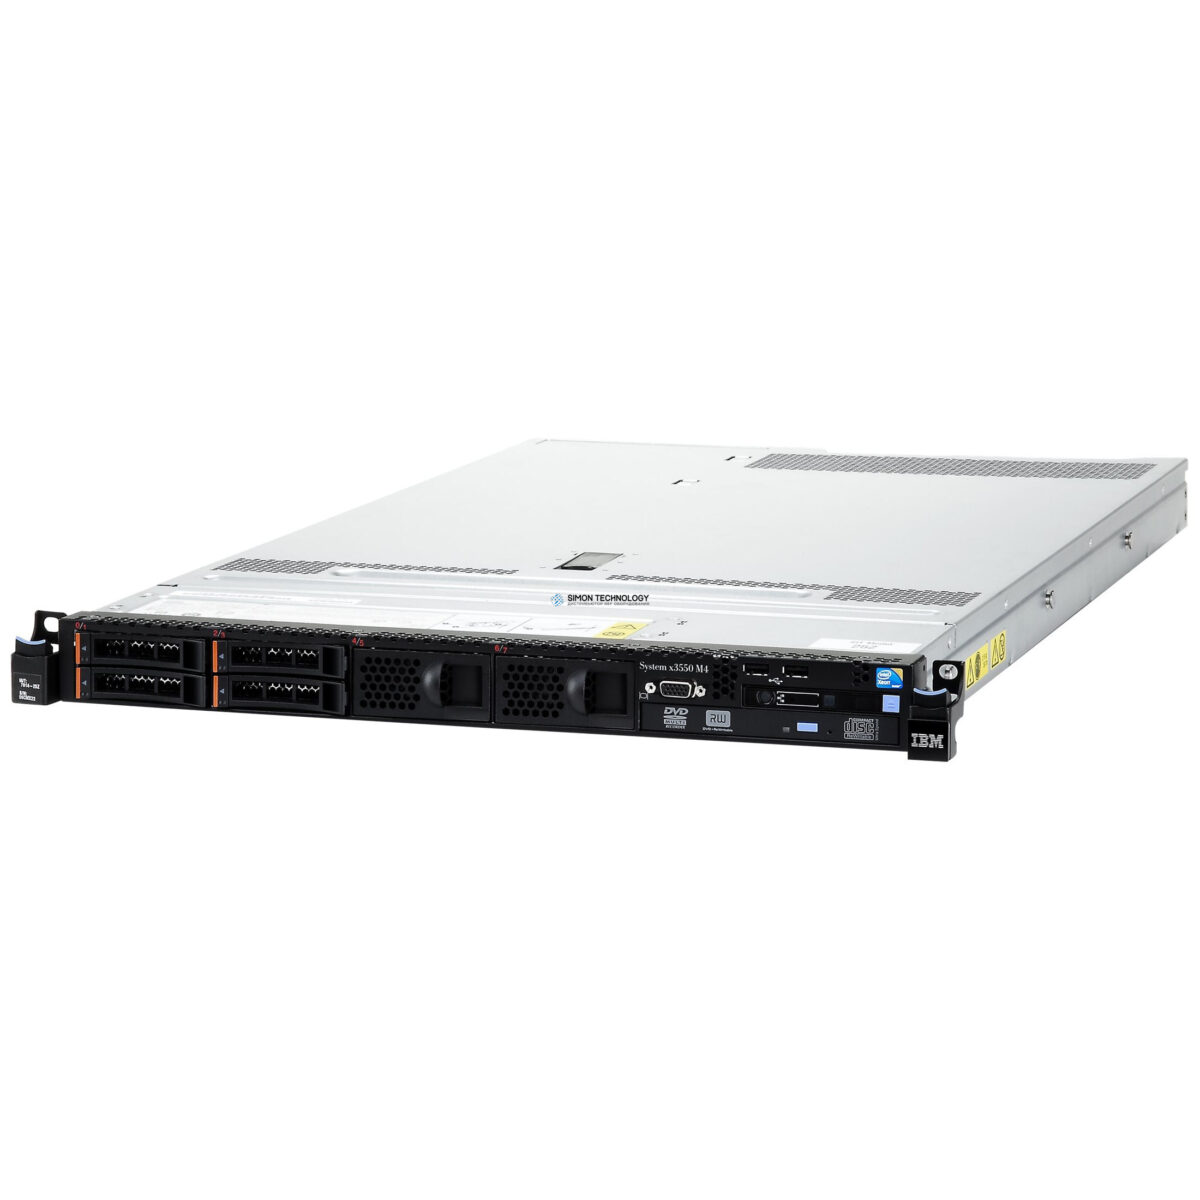 Сервер IBM x3550 M4 - Configured to order, v2 Motherboard (7914AC1-V2)